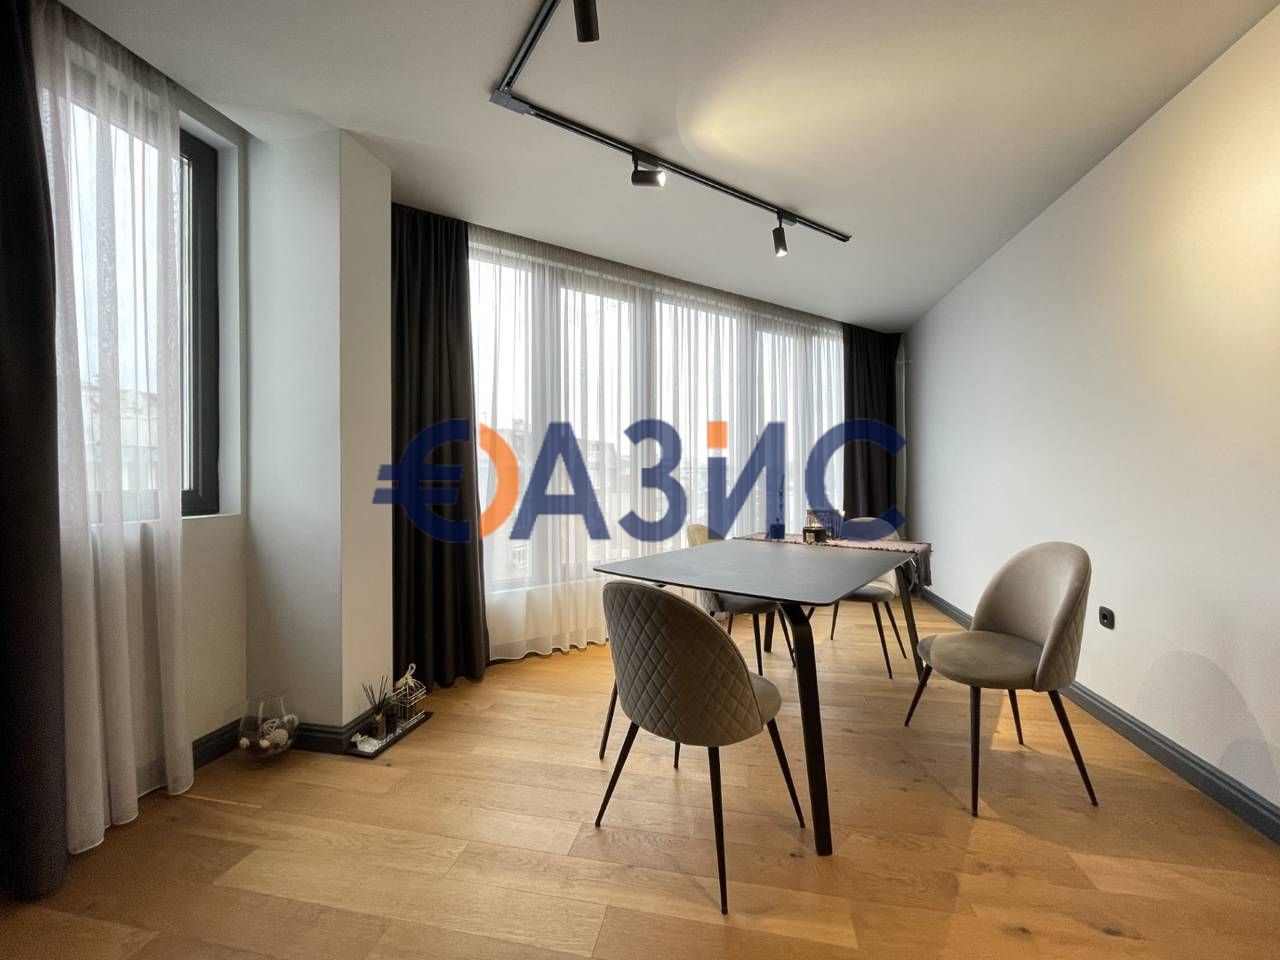 Тристаен апартамент в Несебър, България, 129 кв. м, 135 000 евро